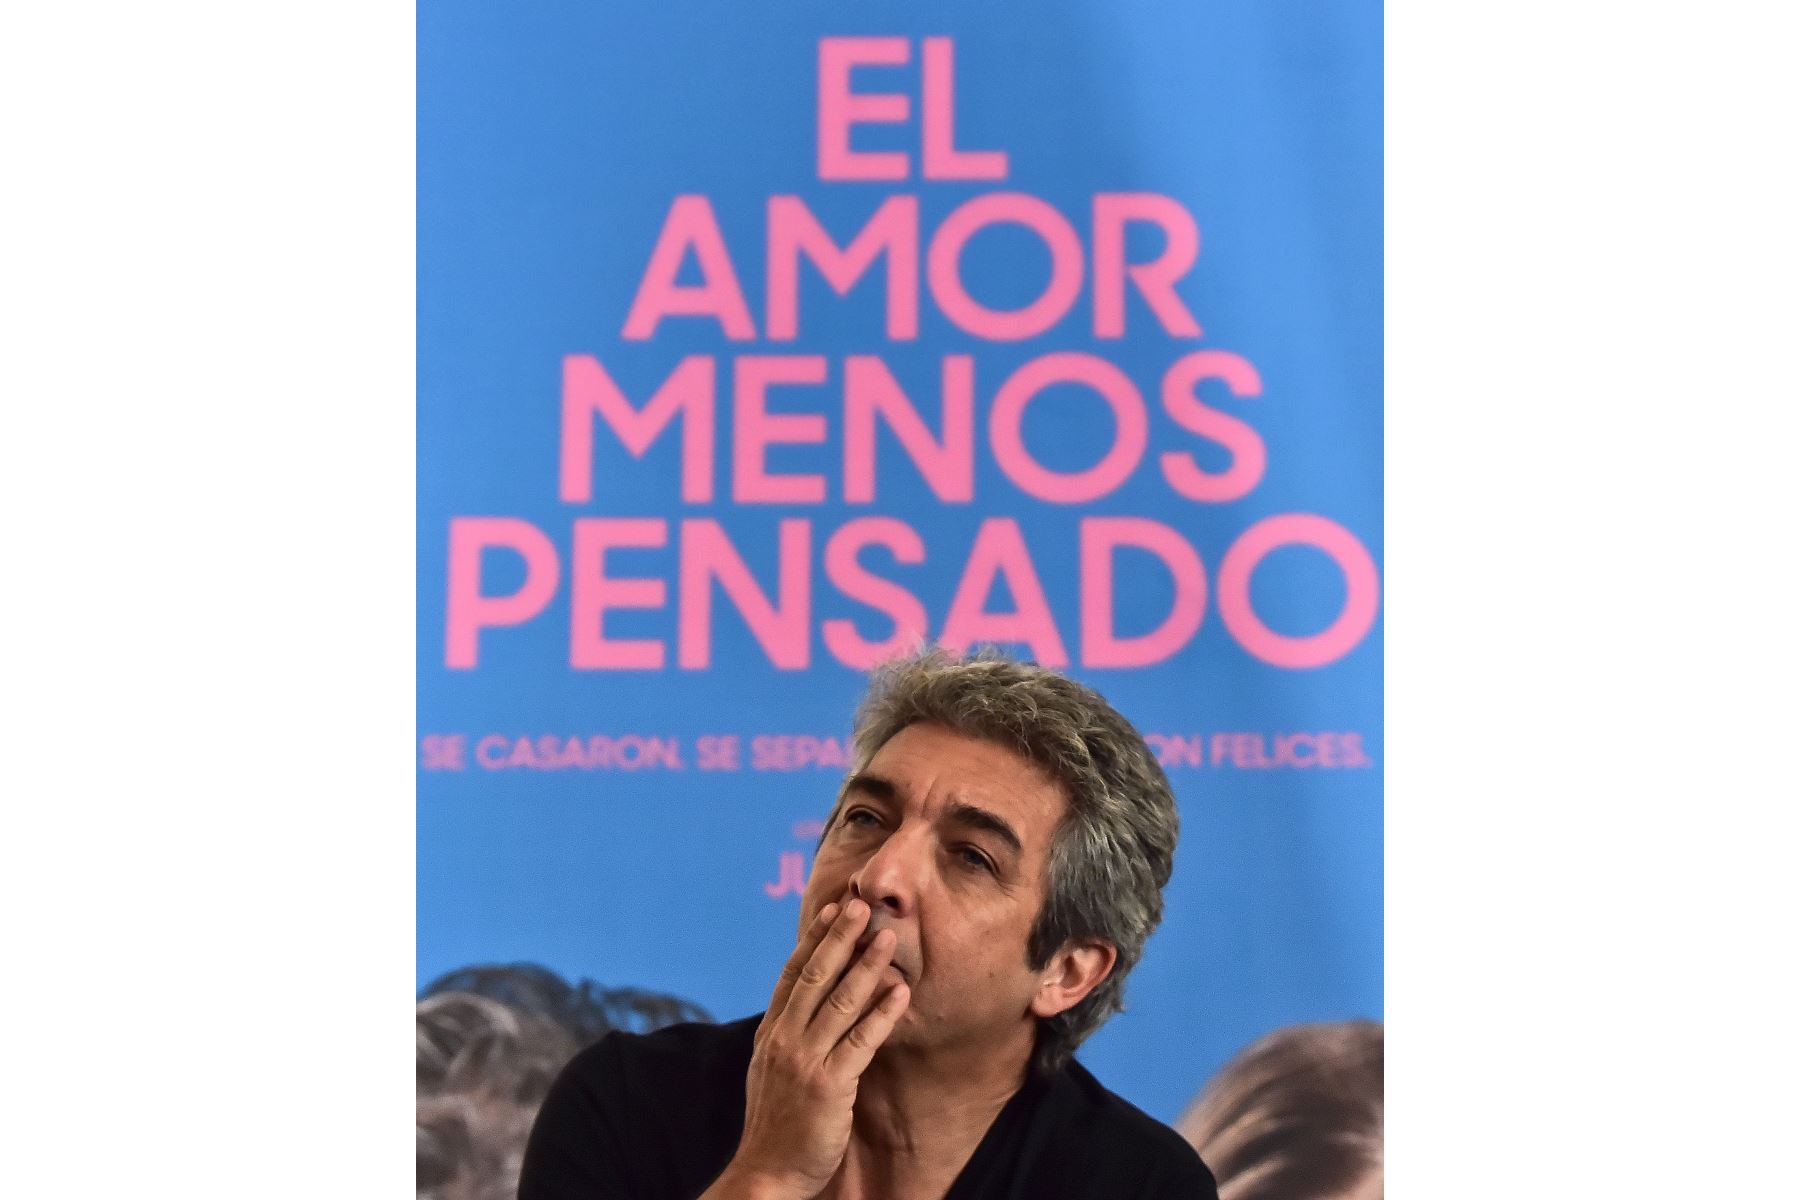 El actor argentino Ricardo Darin hace gestos durante una sesión informativa con periodistas en el Festival Internacional de Cine de Panamá.
Foto: AFP